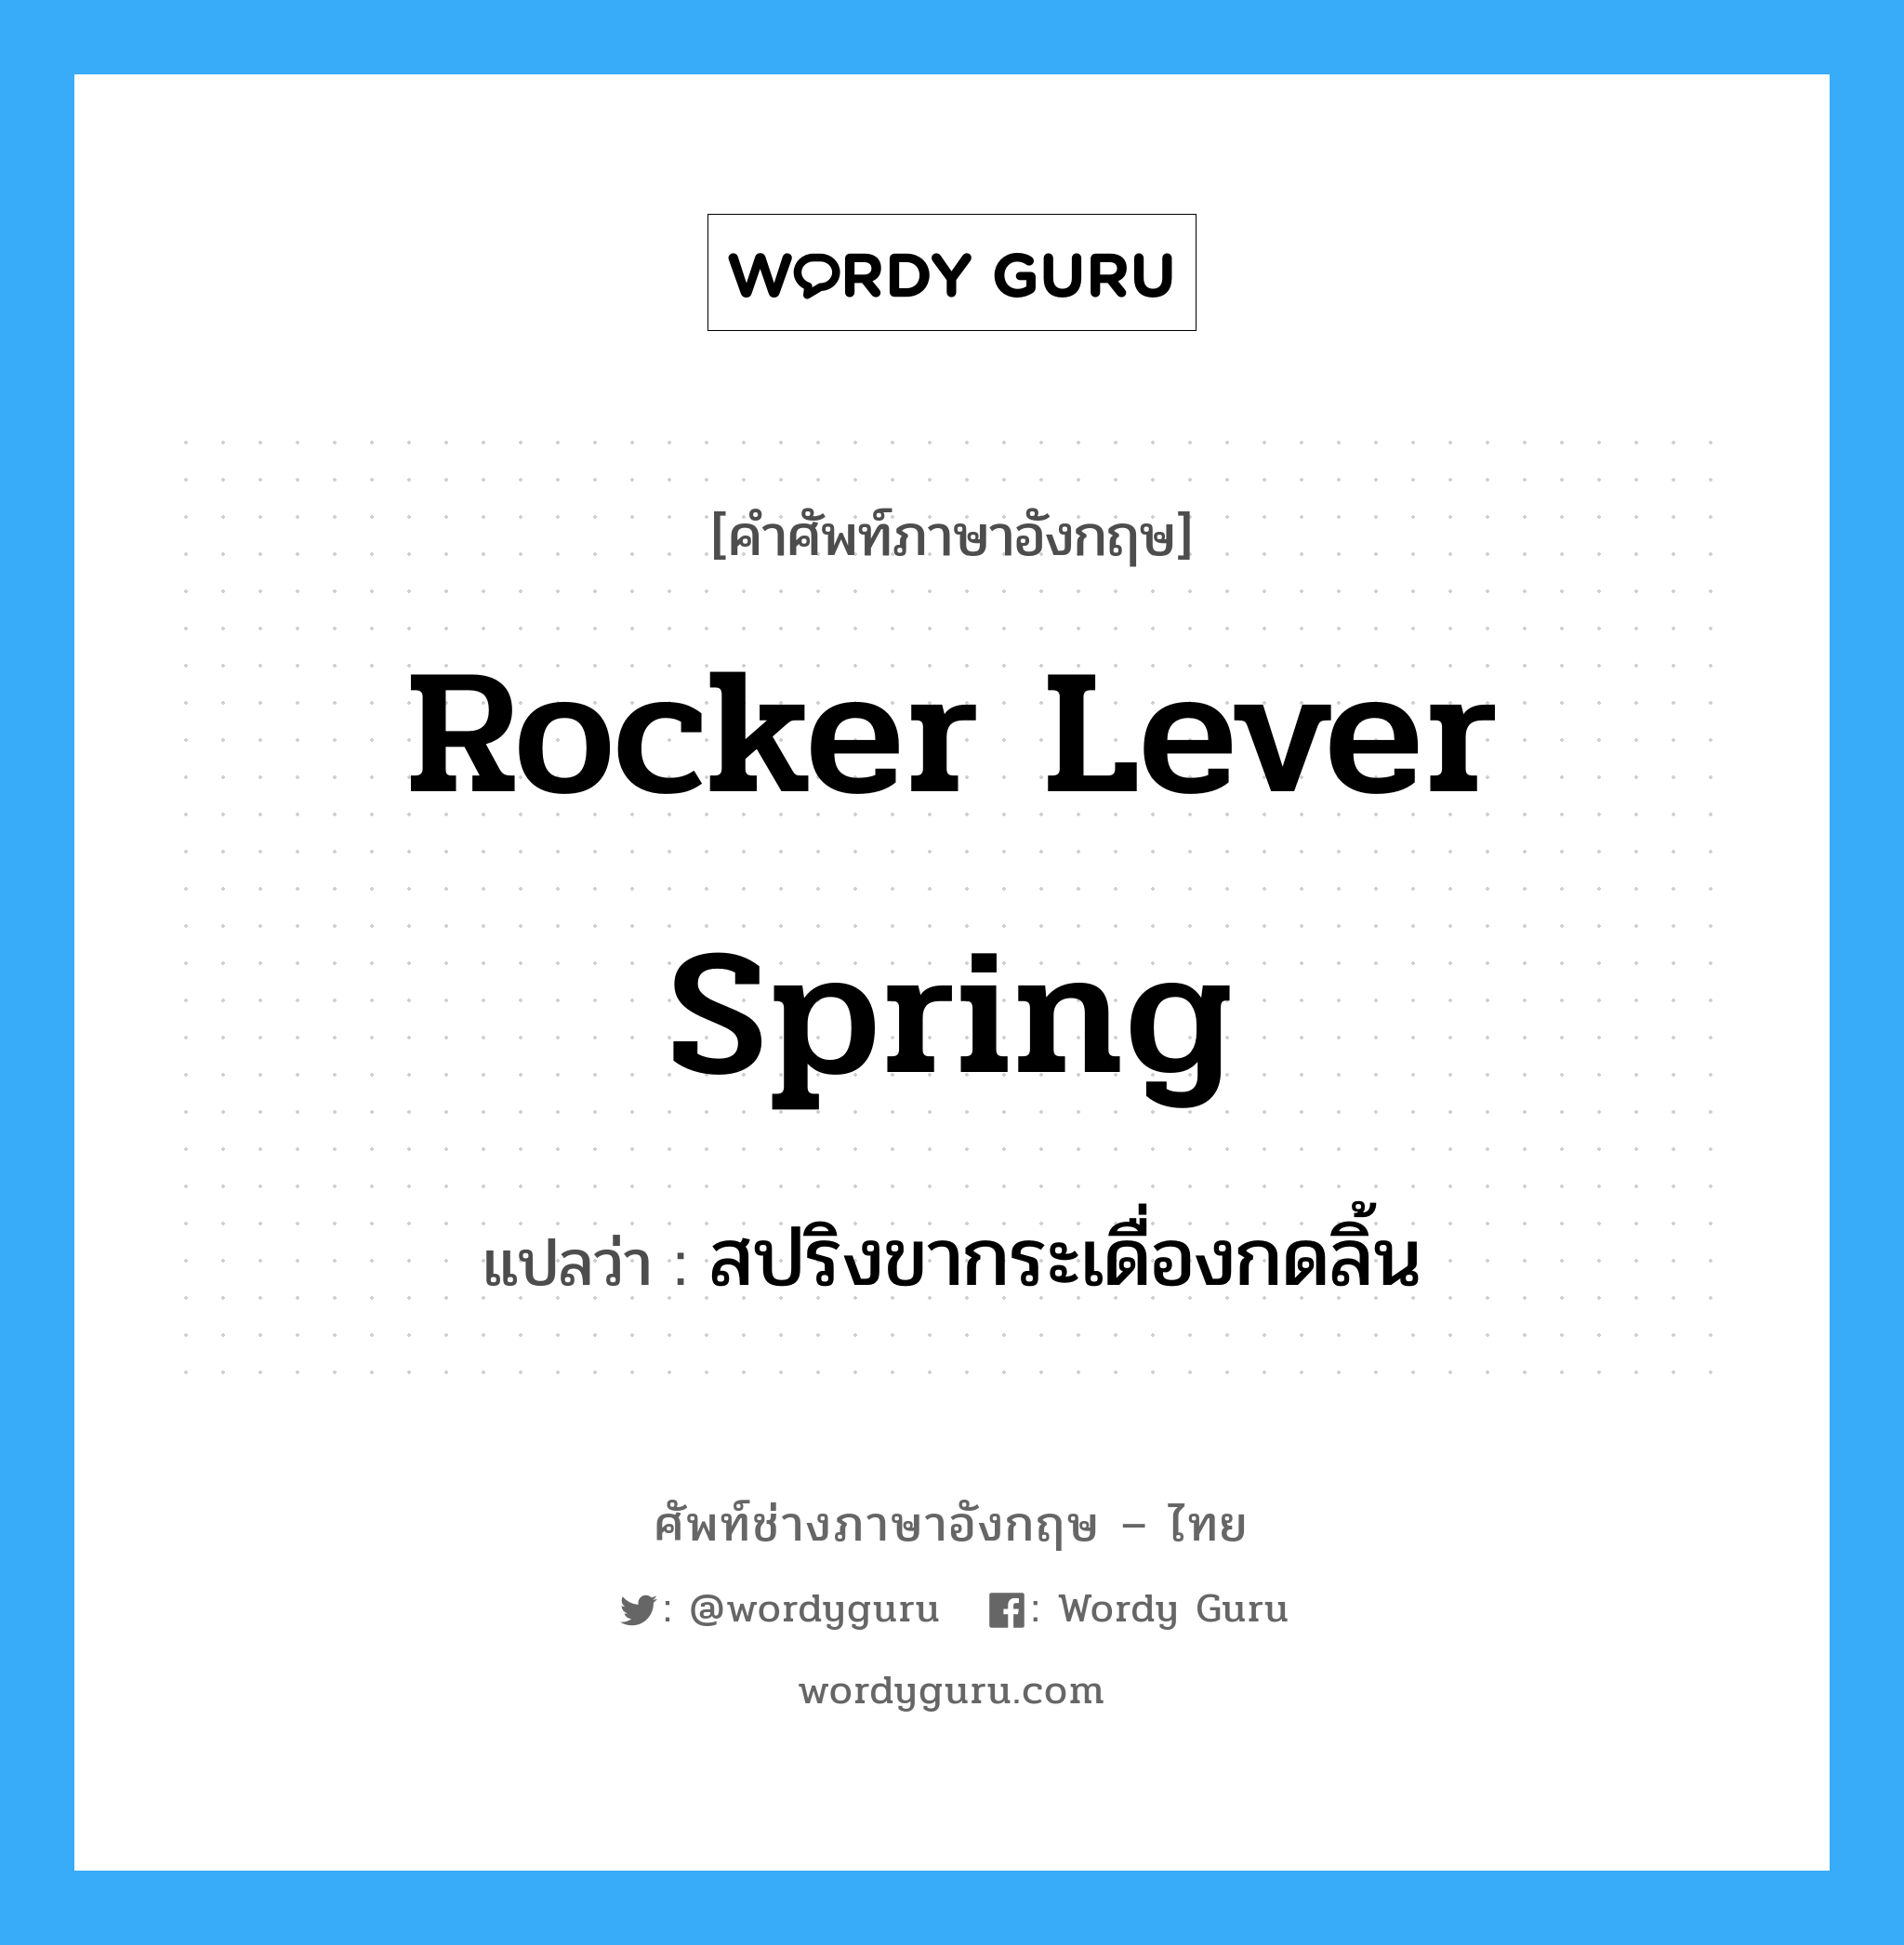 rocker lever spring แปลว่า?, คำศัพท์ช่างภาษาอังกฤษ - ไทย rocker lever spring คำศัพท์ภาษาอังกฤษ rocker lever spring แปลว่า สปริงขากระเดื่องกดลิ้น